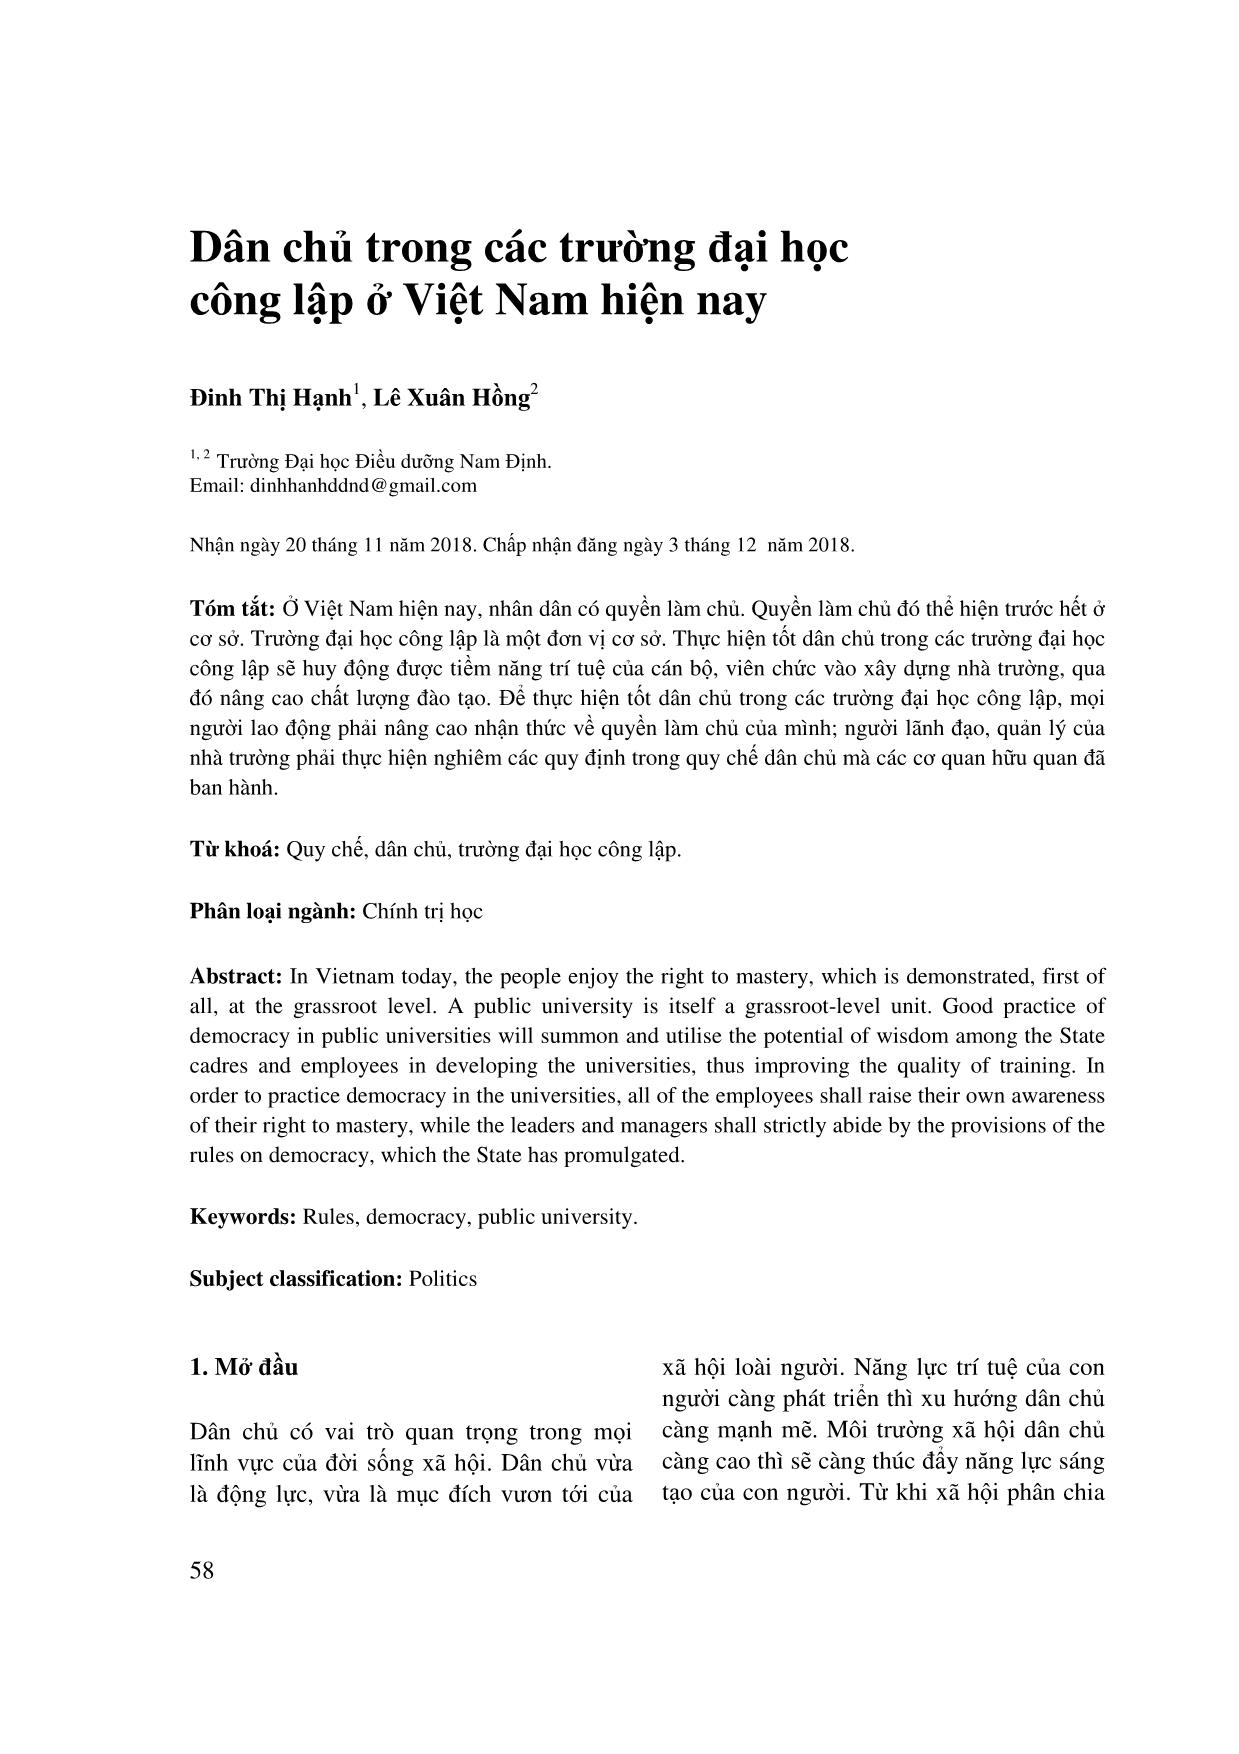 Dân chủ trong các trường đại học công lập ở Việt Nam hiện nay trang 1